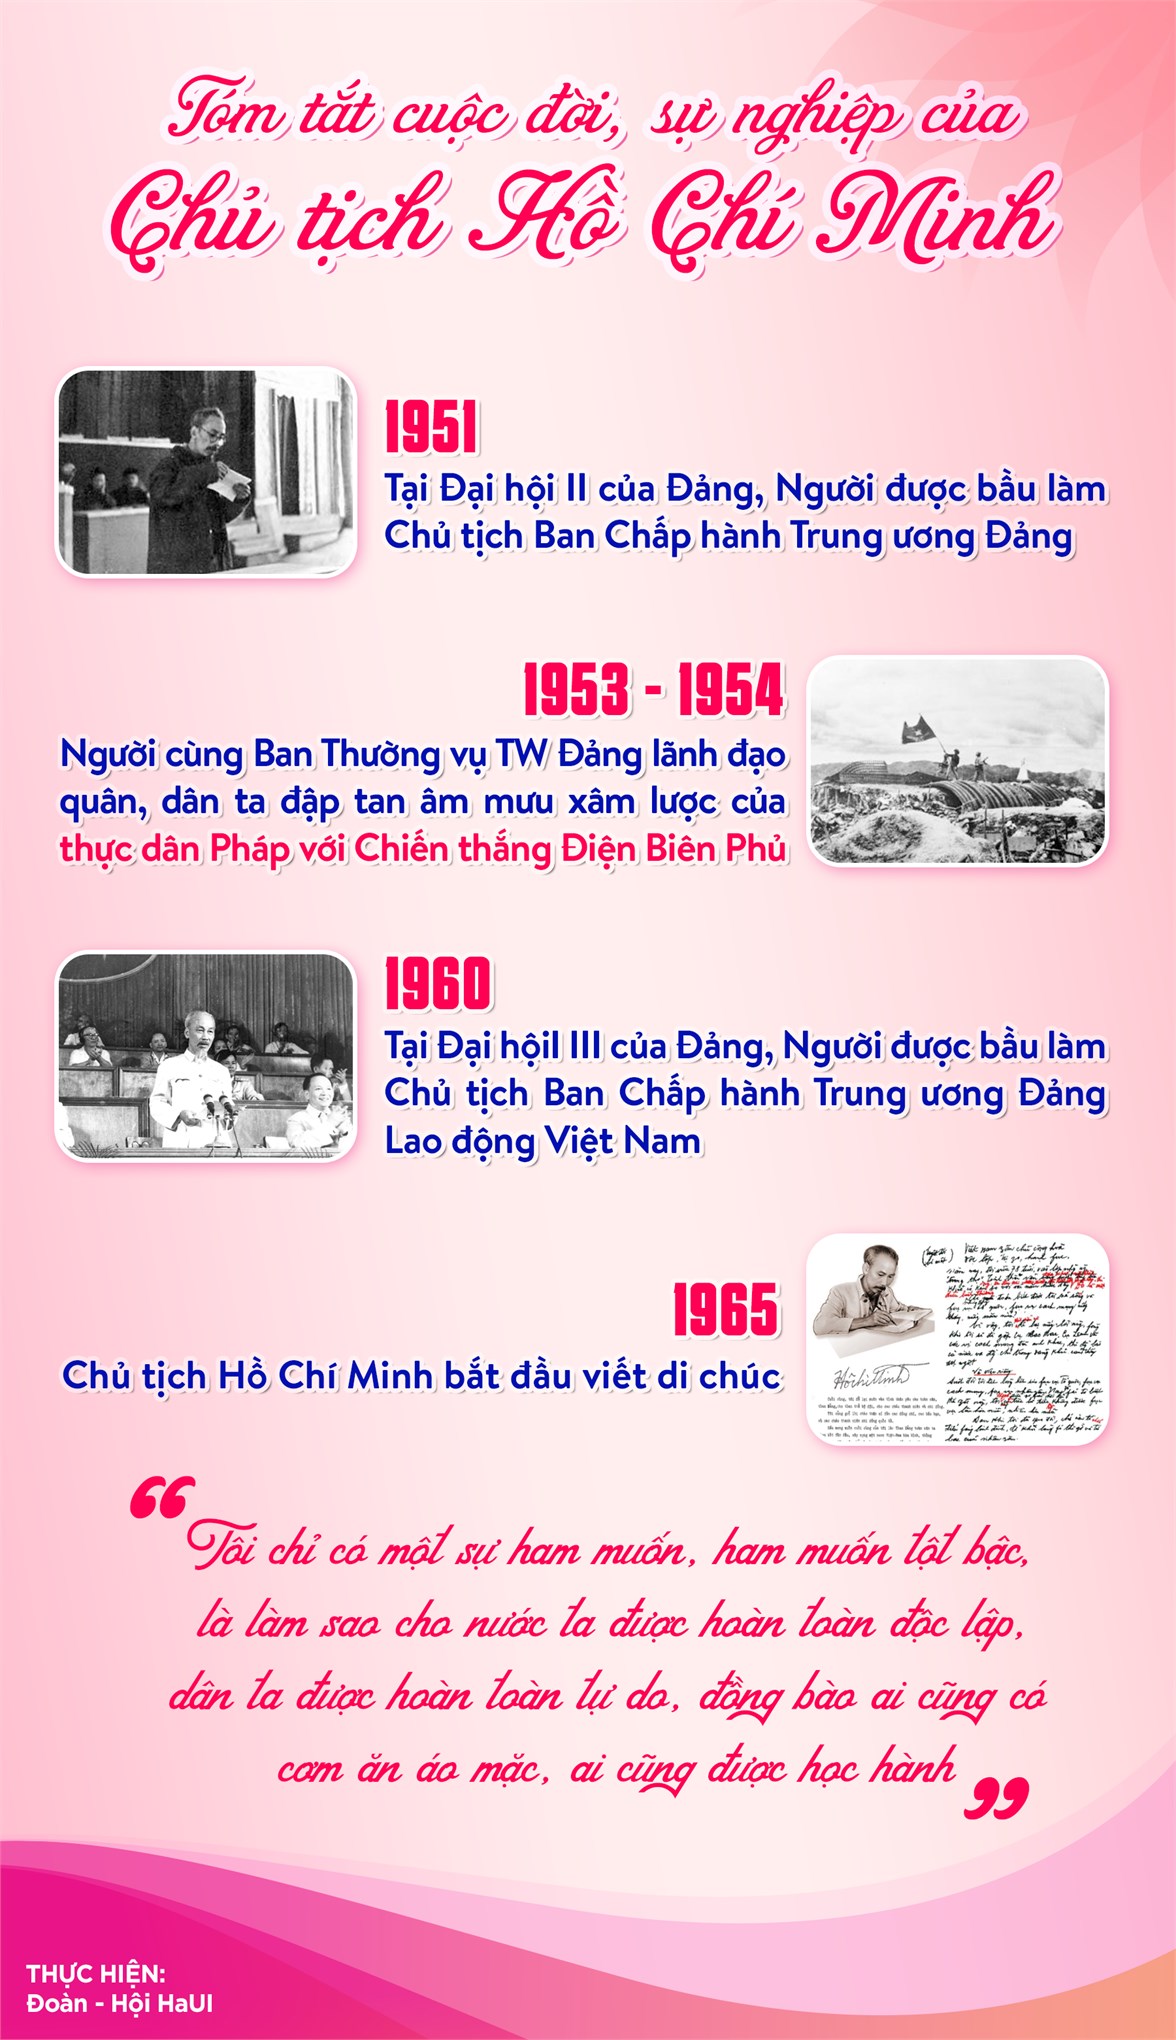 CUỘC ĐỜI VÀ SỰ NGHIỆP CỦA CHỦ TỊCH HỒ CHÍ MINH (1890 - 1969)